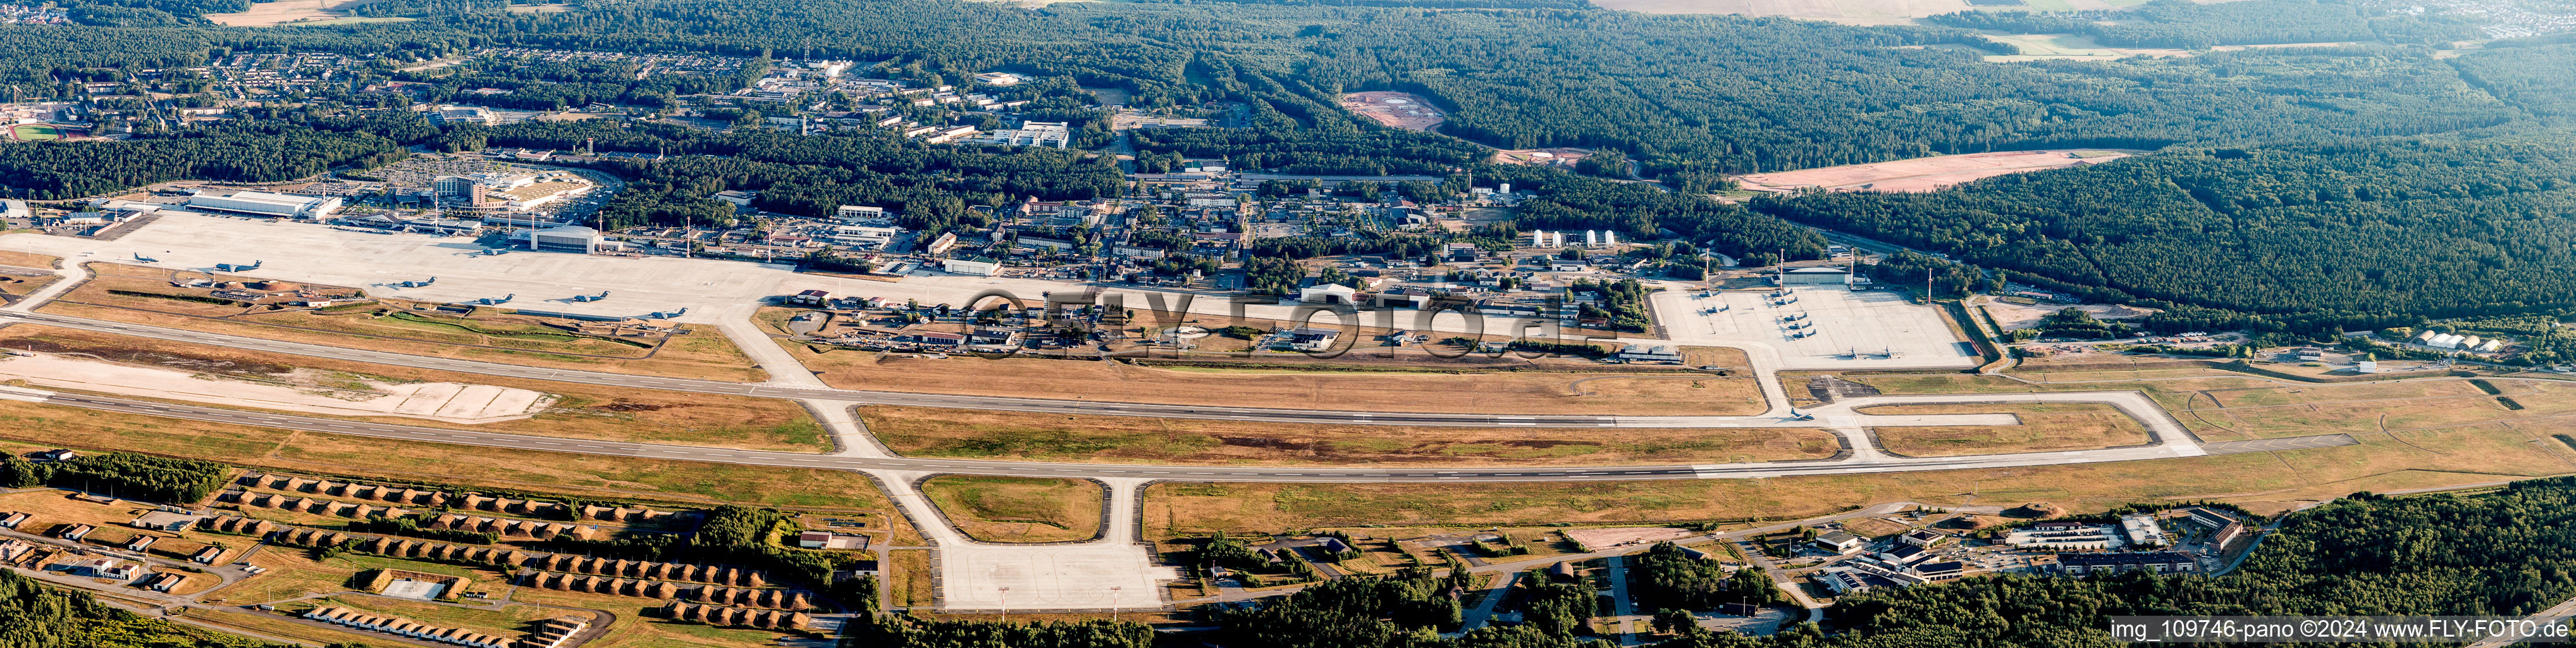 Panorama US Air Base in Ramstein im Bundesland Rheinland-Pfalz, Deutschland